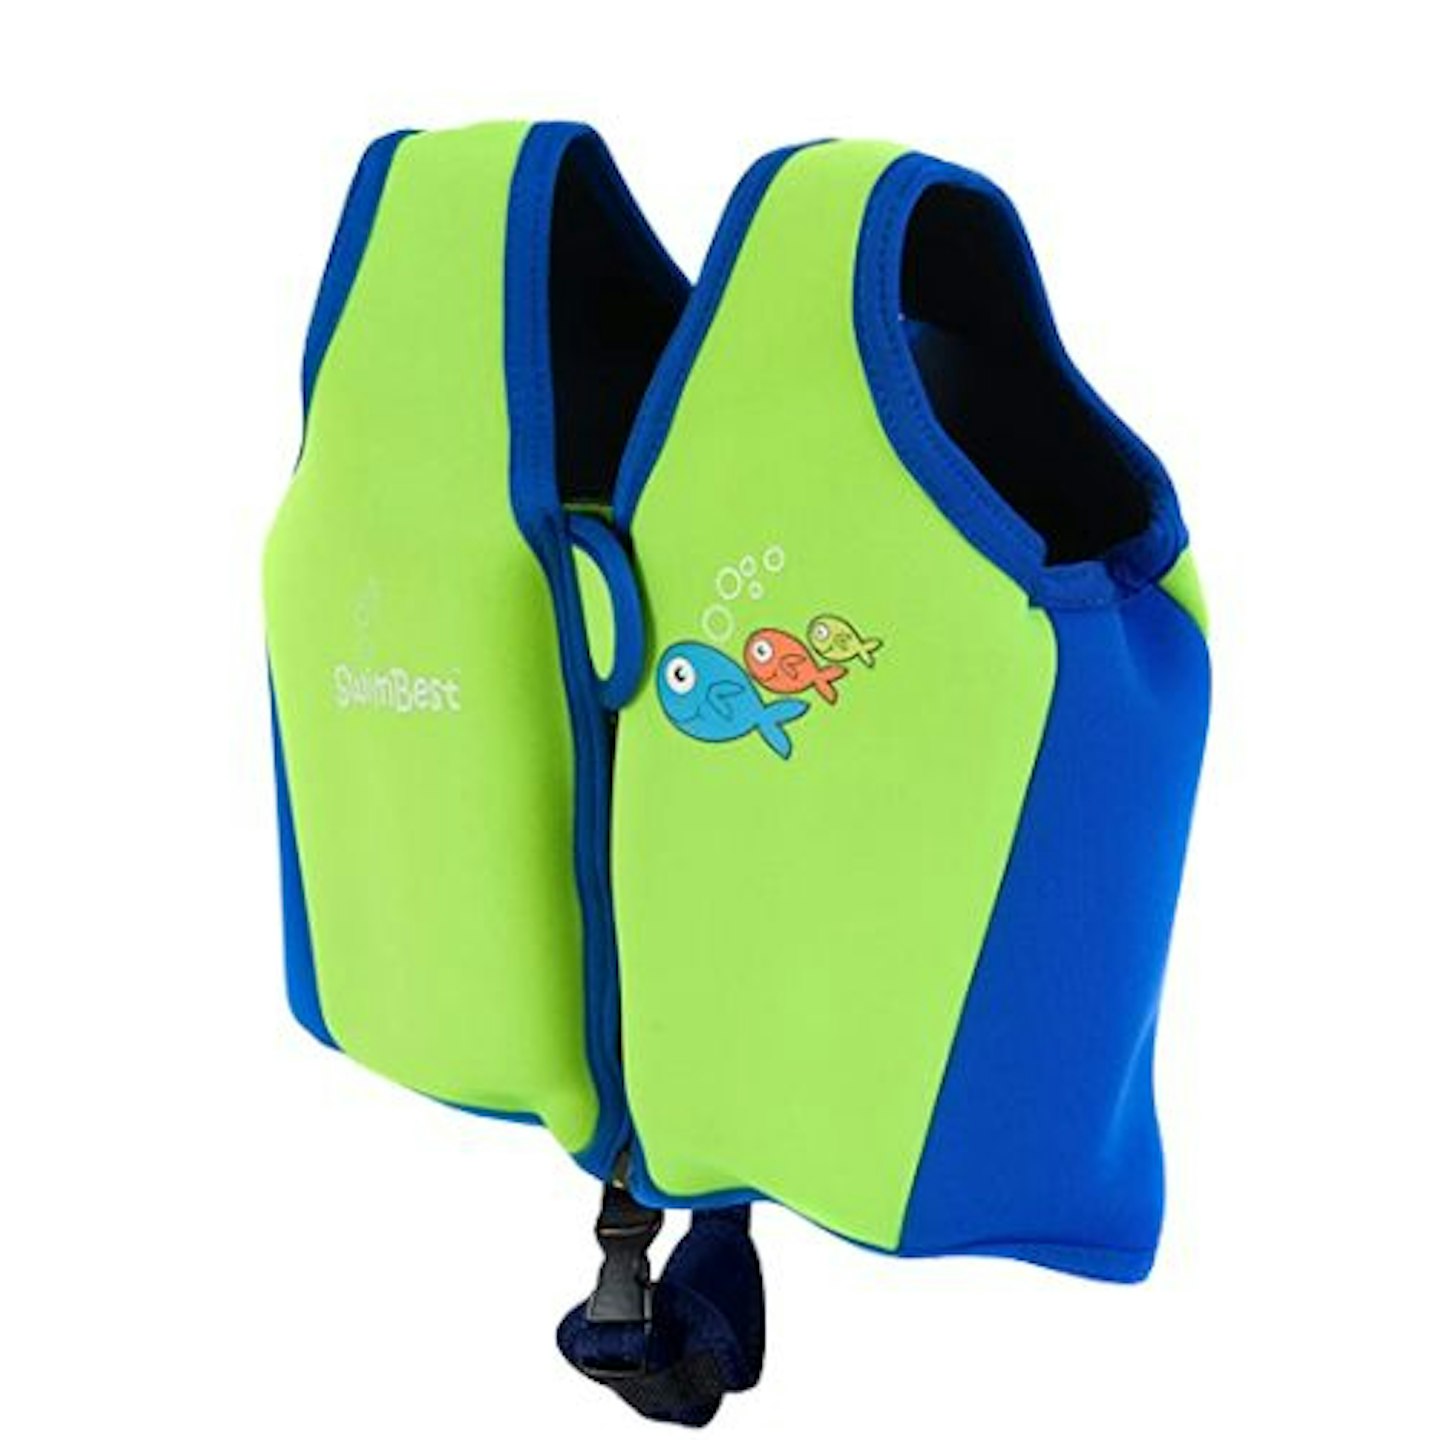 The best baby swim vests